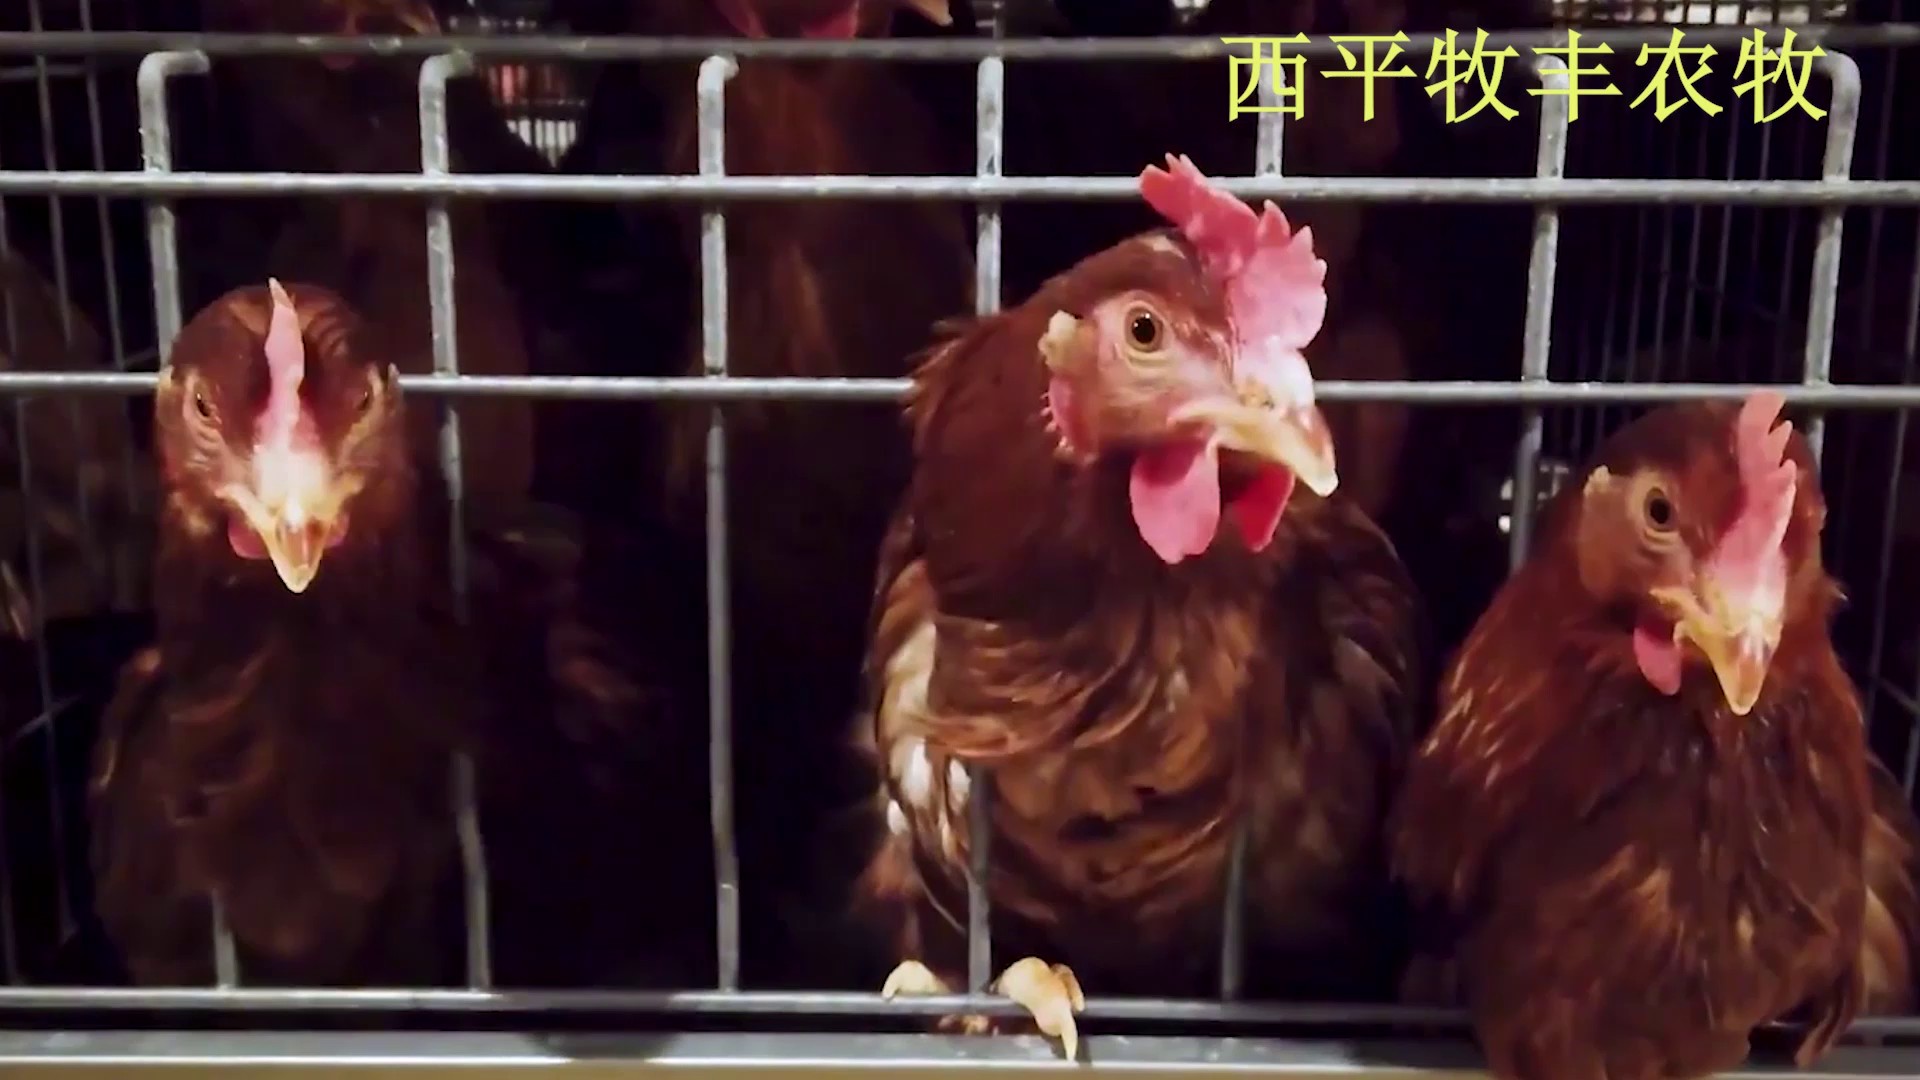 广东自动化养鸡场图片,养鸡